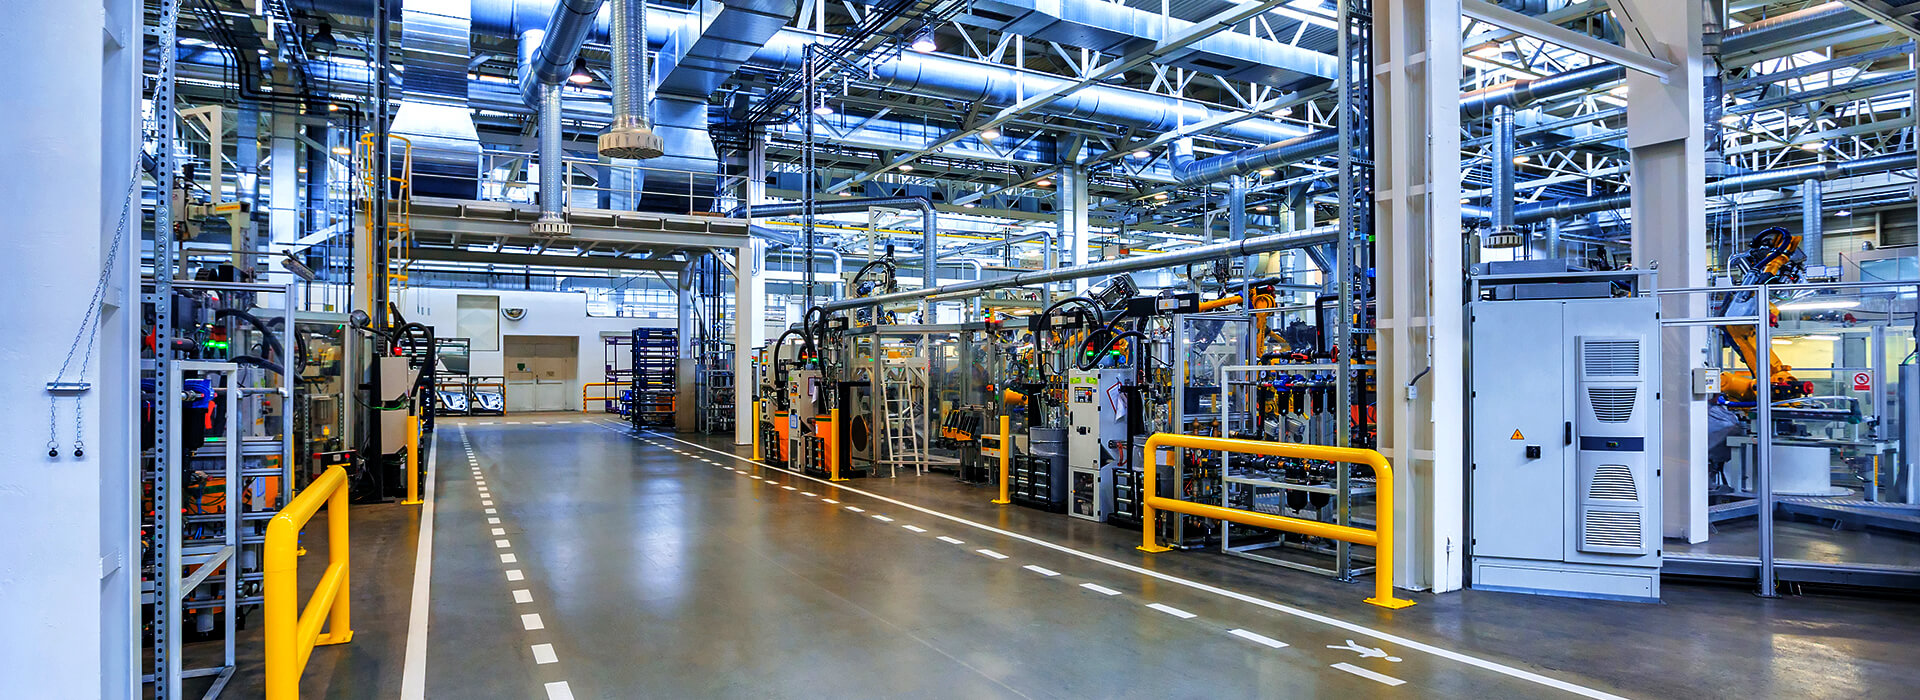 Manufacturing Plant interior